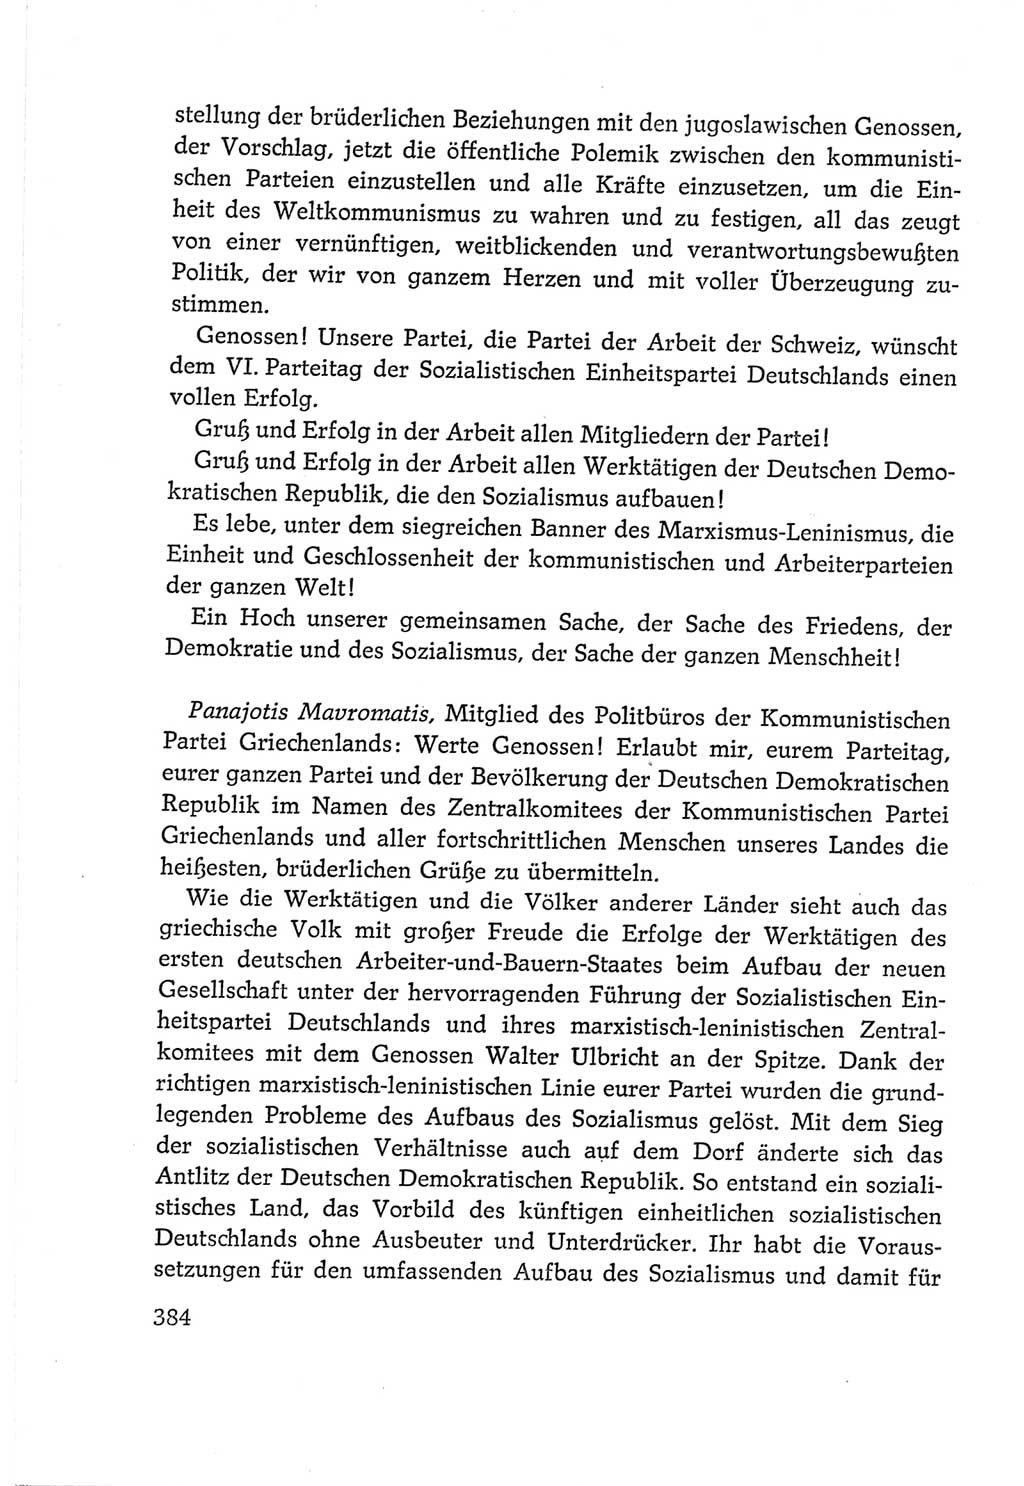 Protokoll der Verhandlungen des Ⅵ. Parteitages der Sozialistischen Einheitspartei Deutschlands (SED) [Deutsche Demokratische Republik (DDR)] 1963, Band Ⅱ, Seite 384 (Prot. Verh. Ⅵ. PT SED DDR 1963, Bd. Ⅱ, S. 384)